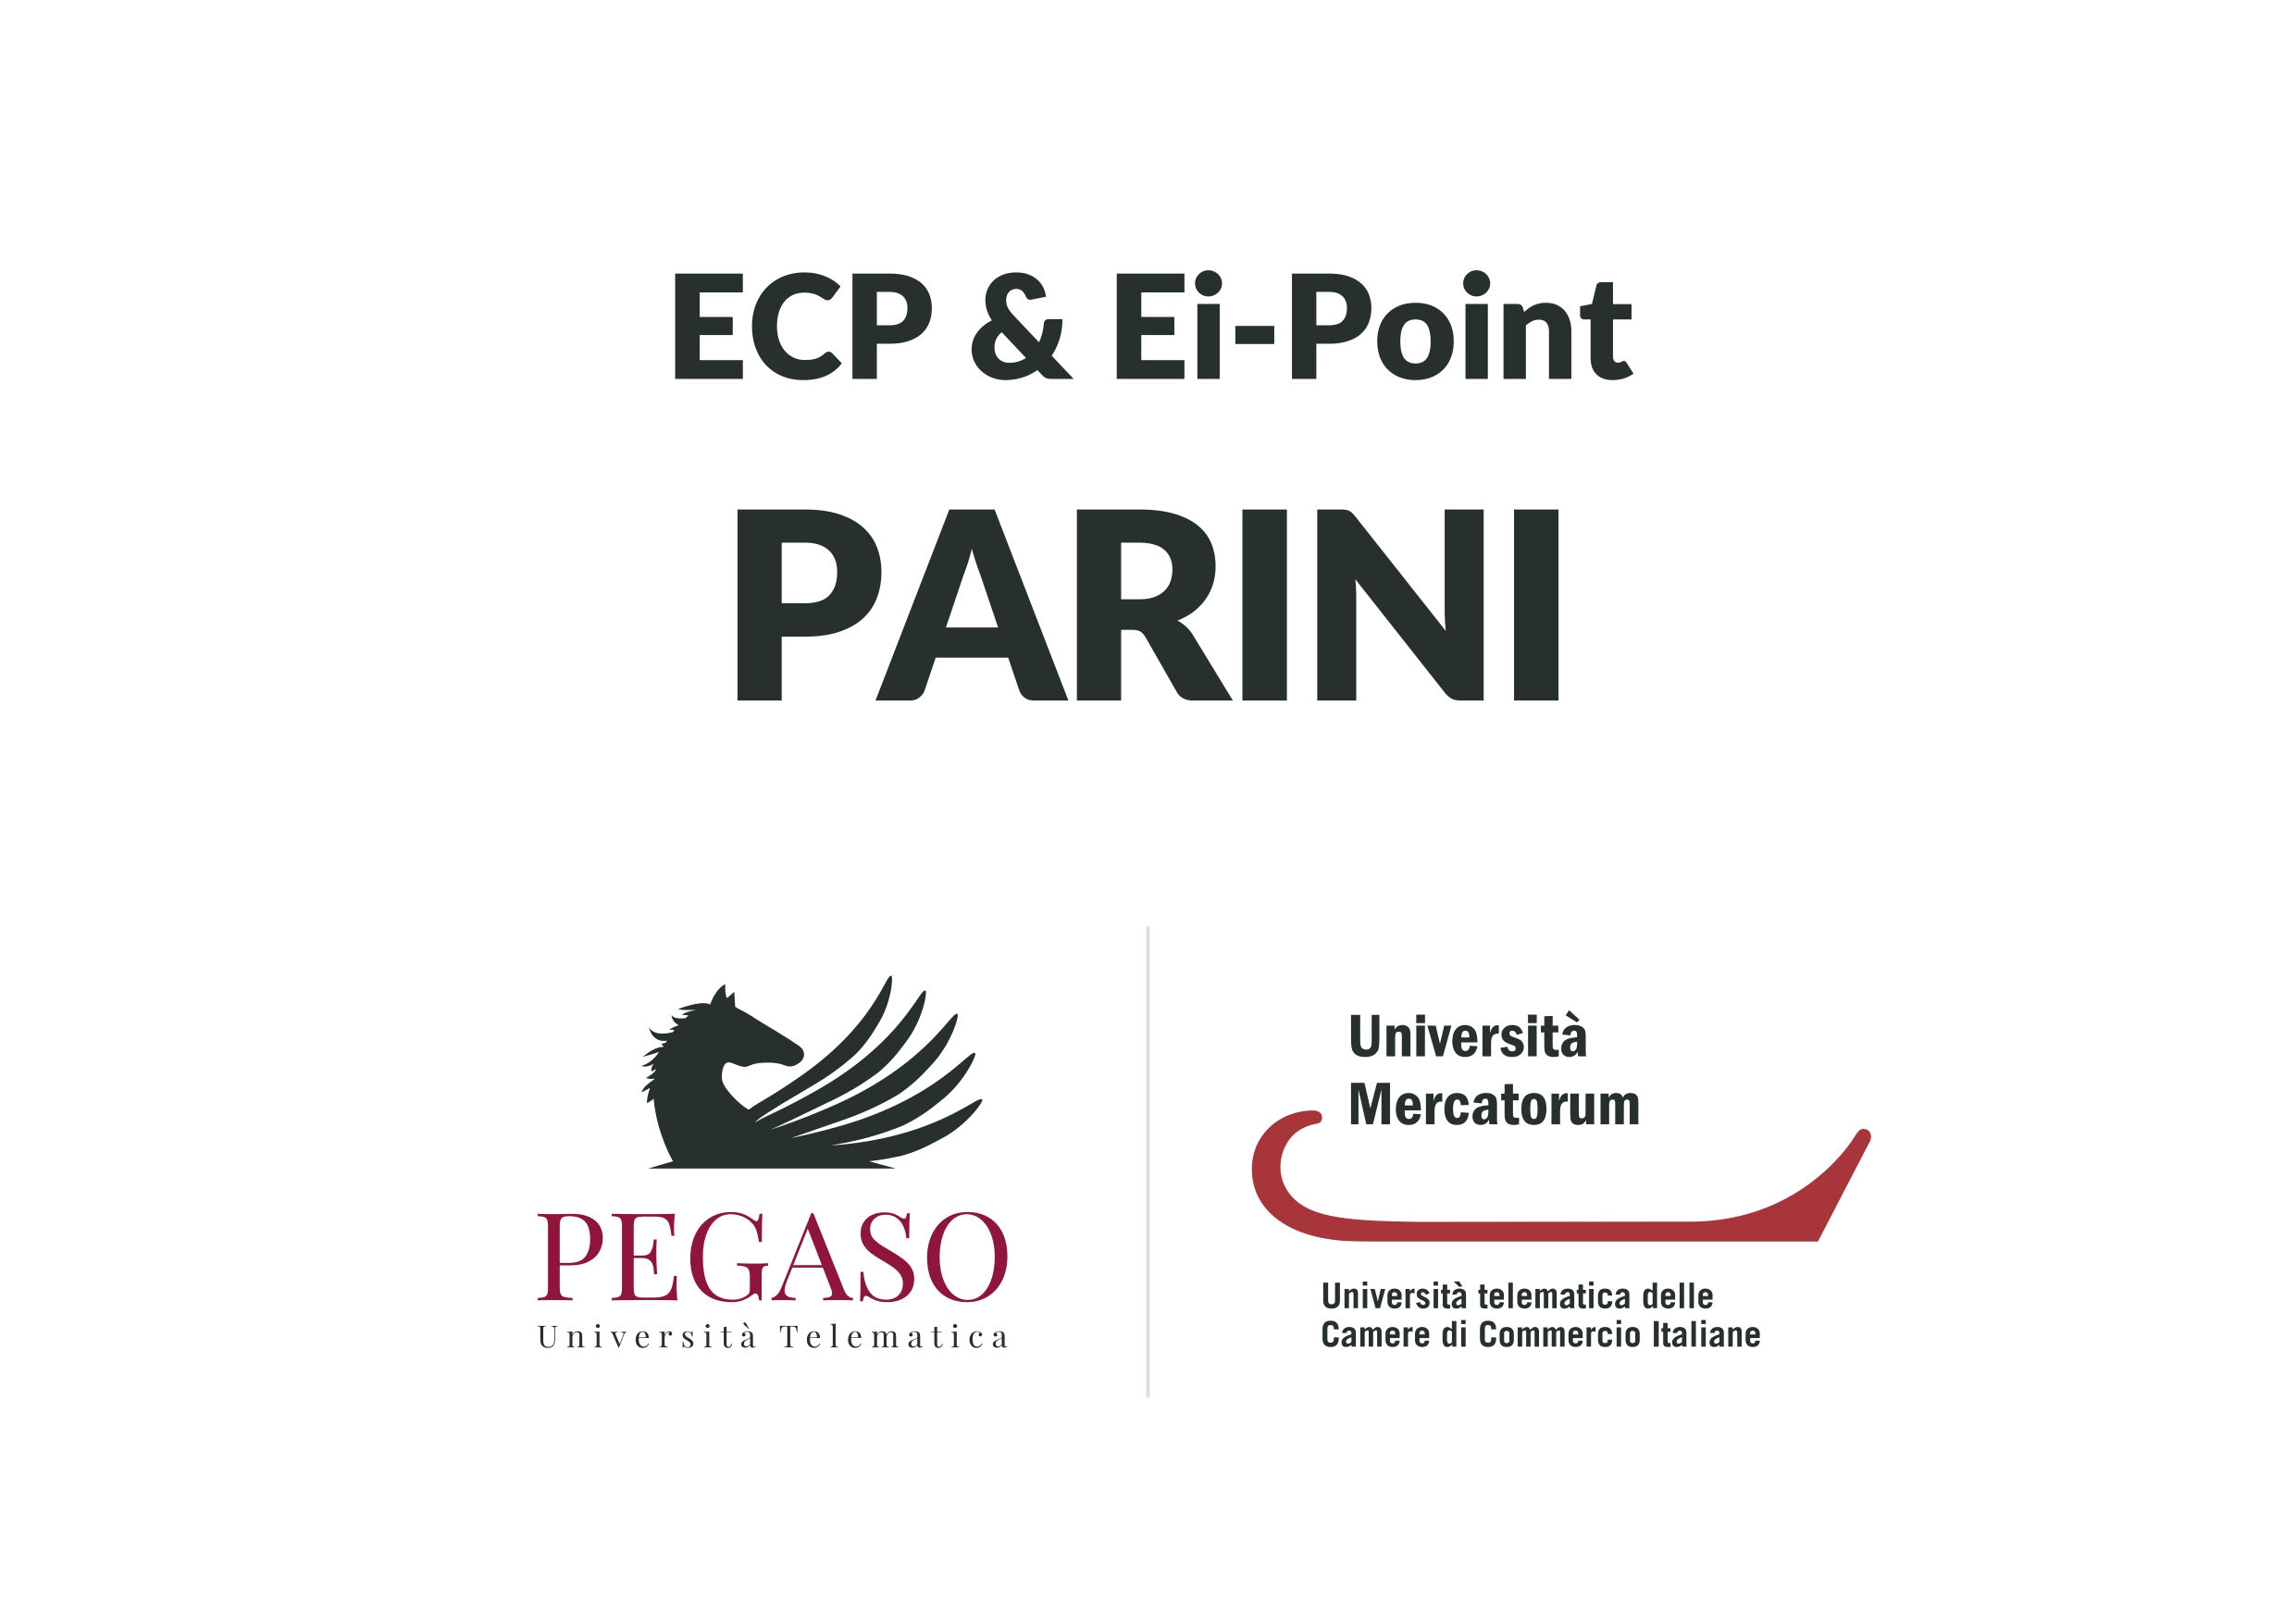 Pegaso-Mecatorum_Logo_ECP-EiPOINT-PARINI